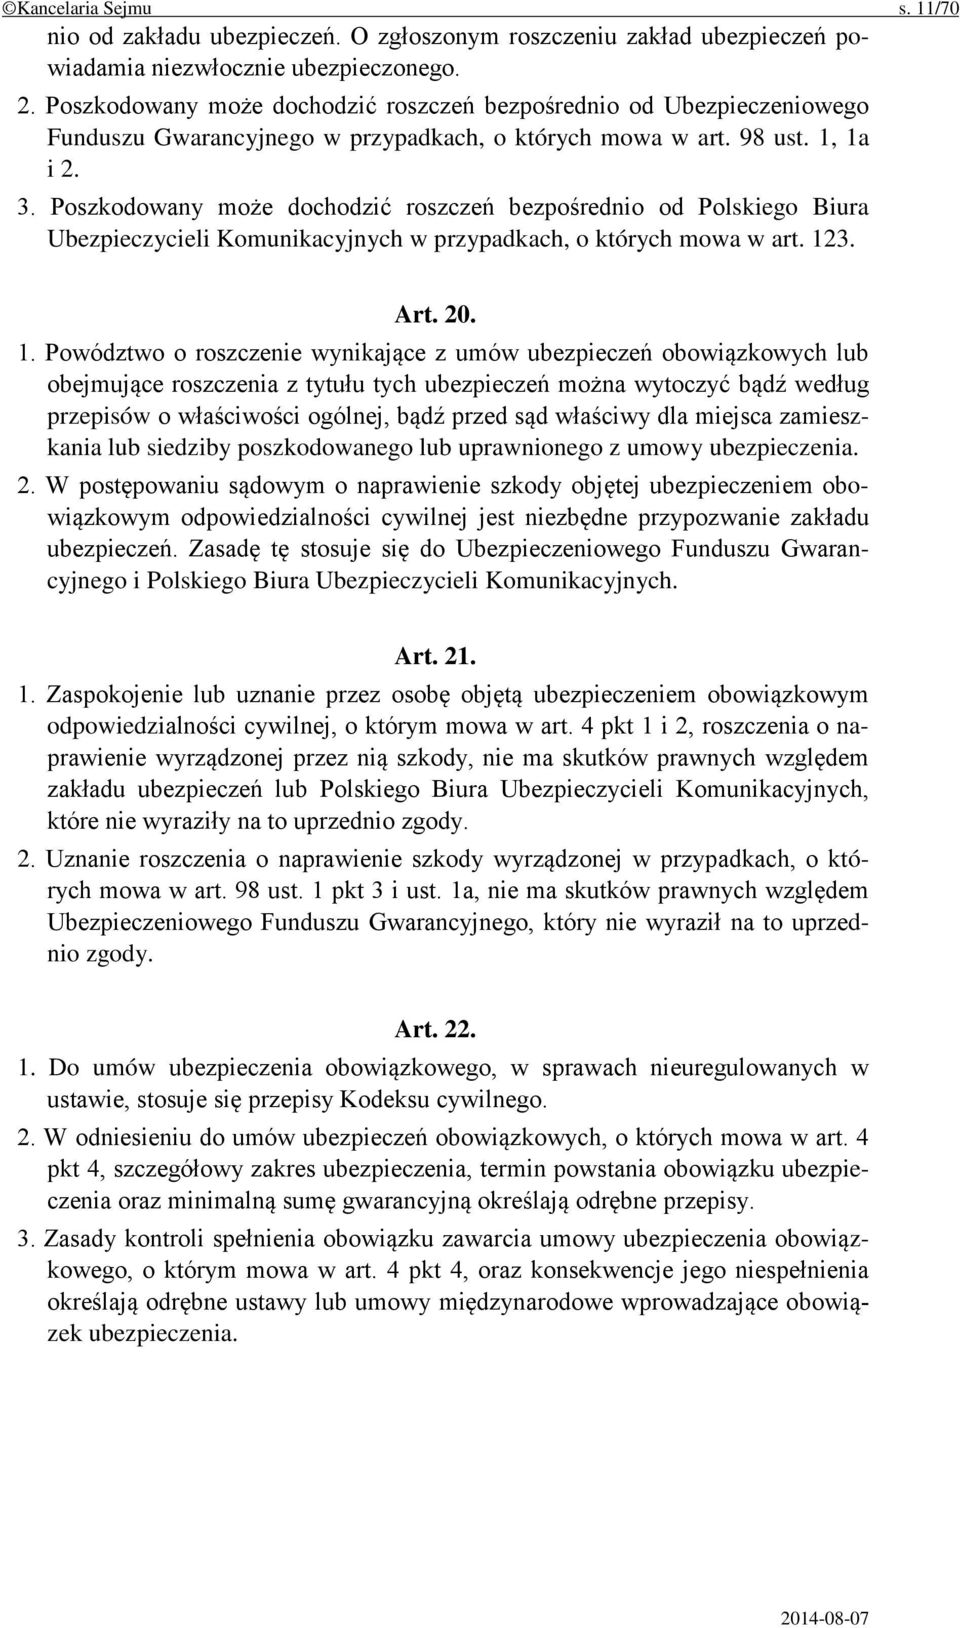 Poszkodowany może dochodzić roszczeń bezpośrednio od Polskiego Biura Ubezpieczycieli Komunikacyjnych w przypadkach, o których mowa w art. 12